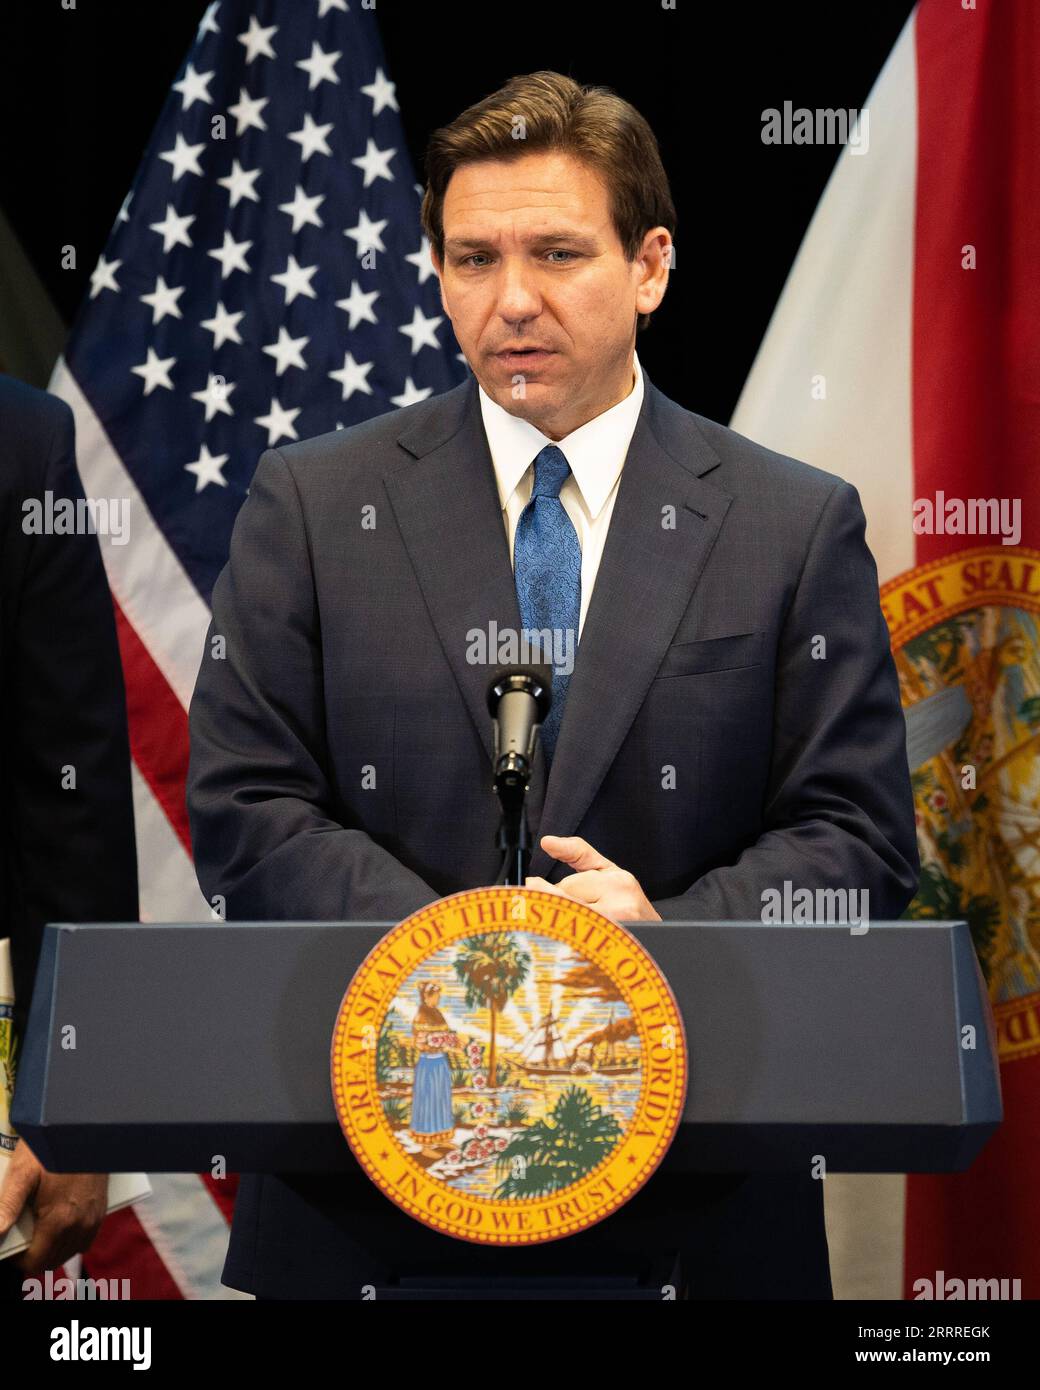 230525 -- WASHINGTON, D.C., le 25 mai 2023 -- le gouverneur de Floride Ron DeSantis prononce un discours lors d'un événement en Floride, aux États-Unis, le 17 avril 2023. DeSantis a annoncé mercredi son entrée dans la course présidentielle américaine de 2024, promettant de mener un grand retour américain. Gouvernement de l'État de Floride/document via Xinhua U.S.-FLORIDA-GOVERNOR-DESANTIS-2024 CANDIDATURE PRÉSIDENTIELLE LiuxJie PUBLICATIONxNOTxINxCHN Banque D'Images